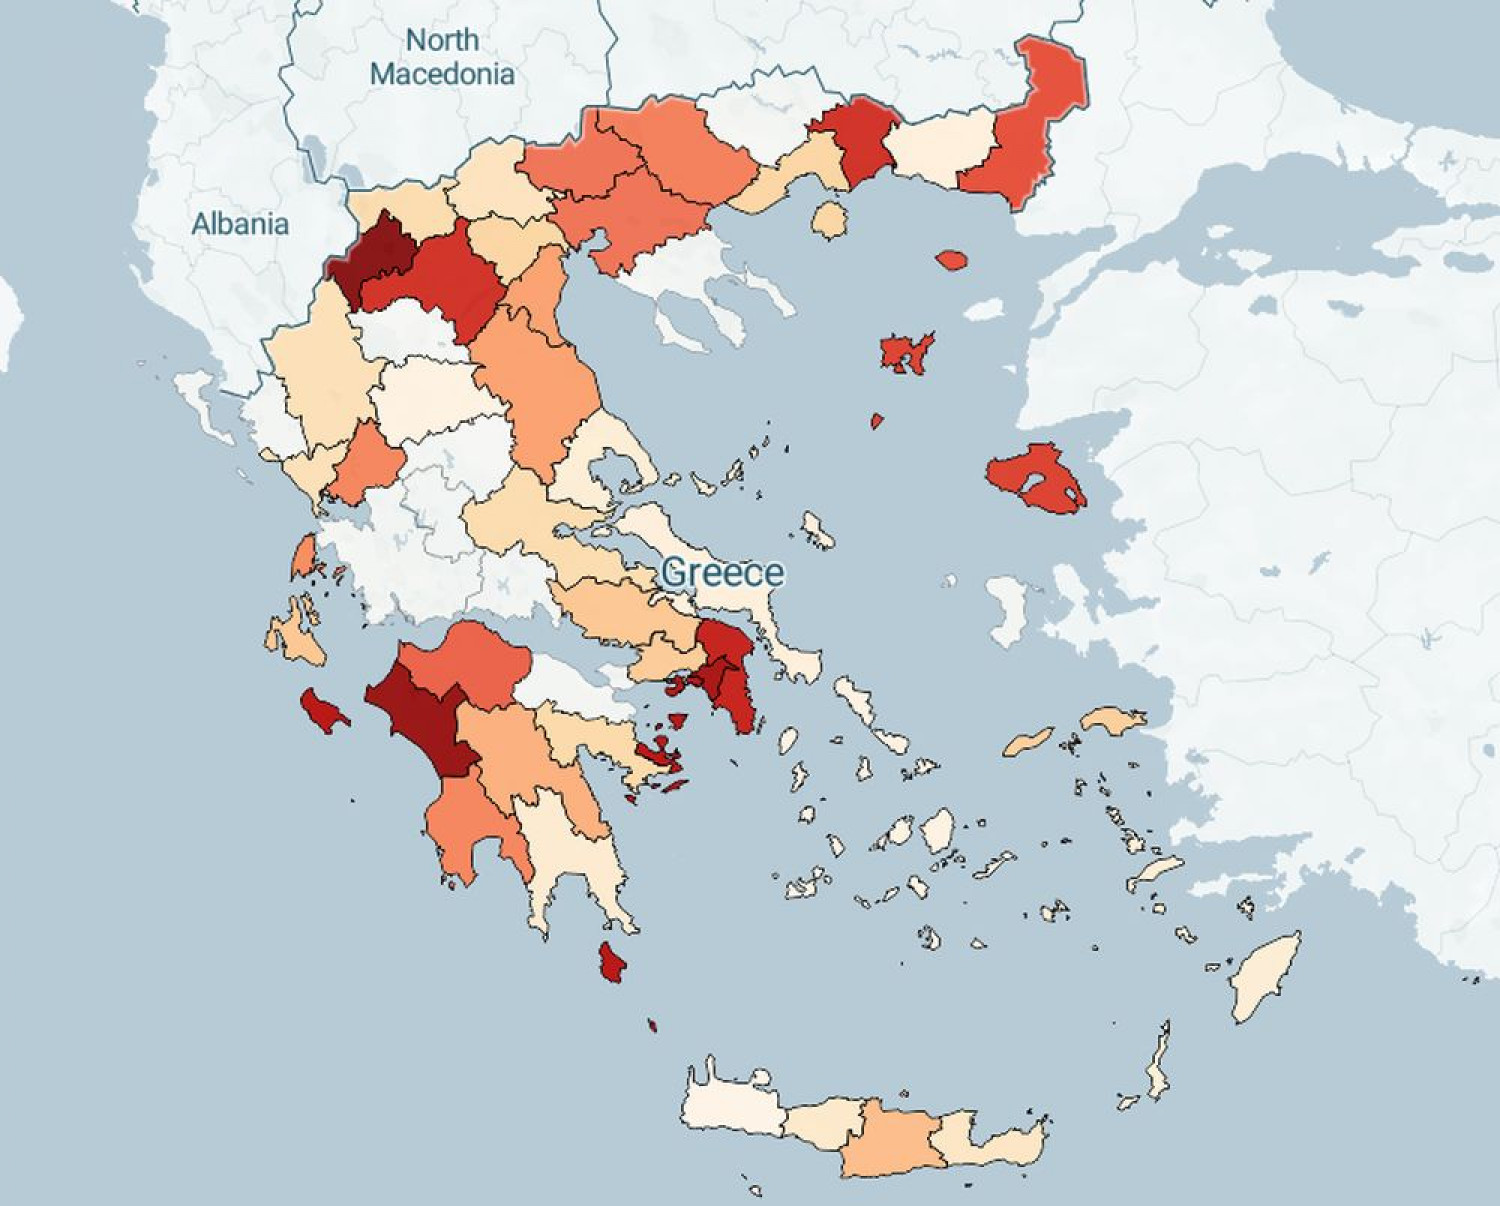 Live χάρτης για κορονοϊό σε Ελλάδα - Κρούσματα ανά περιοχή